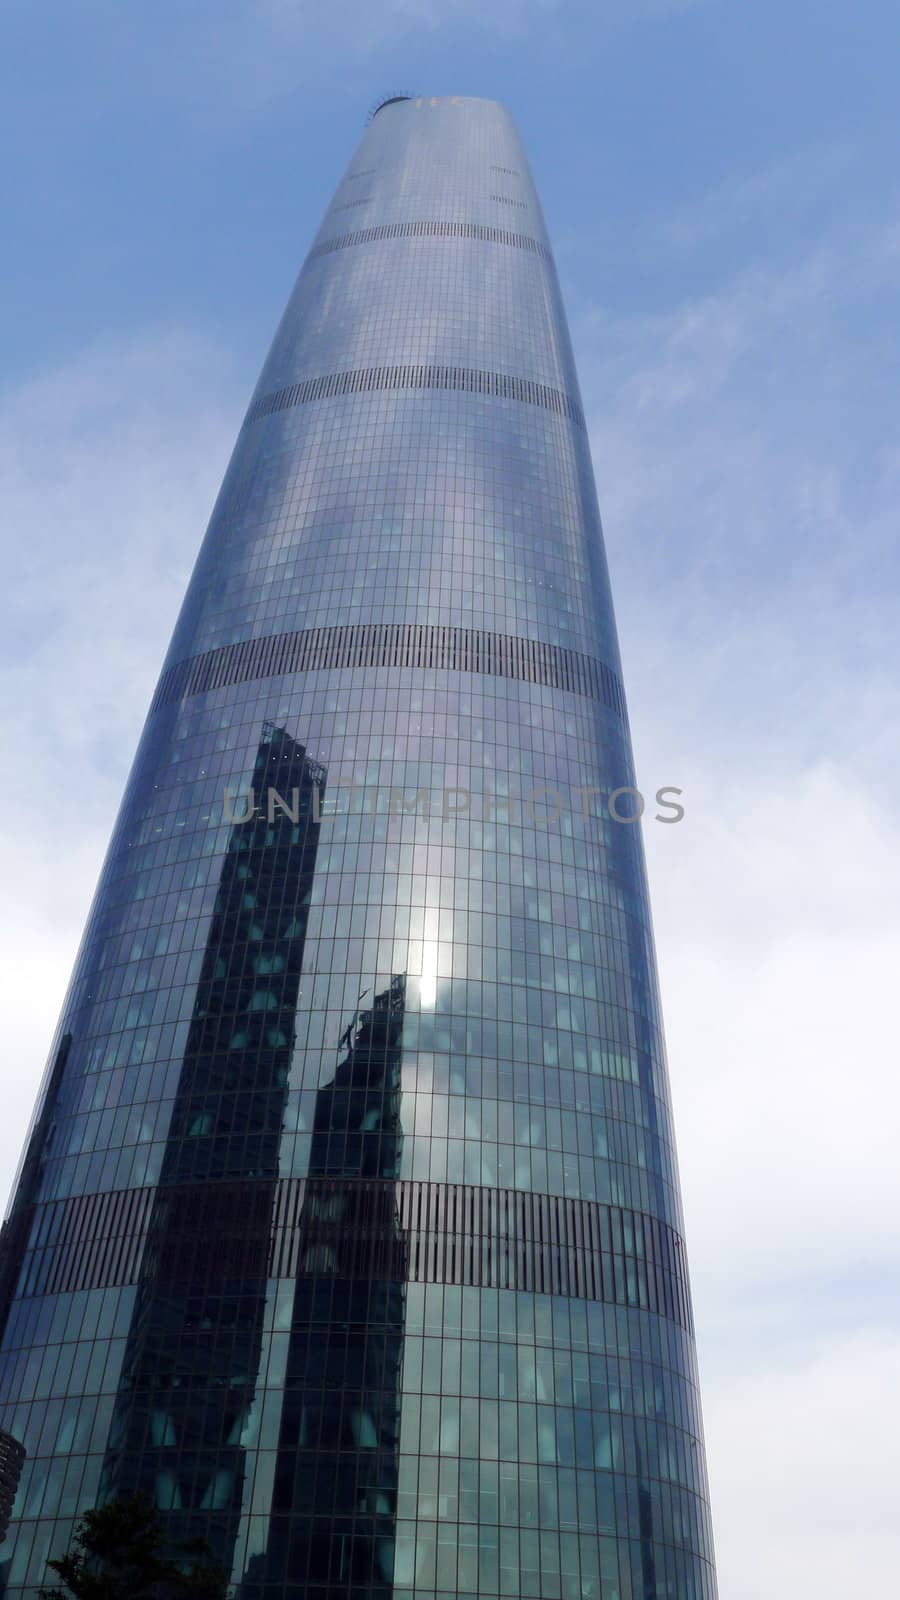 Landmark of modern skyscraper against blue sky